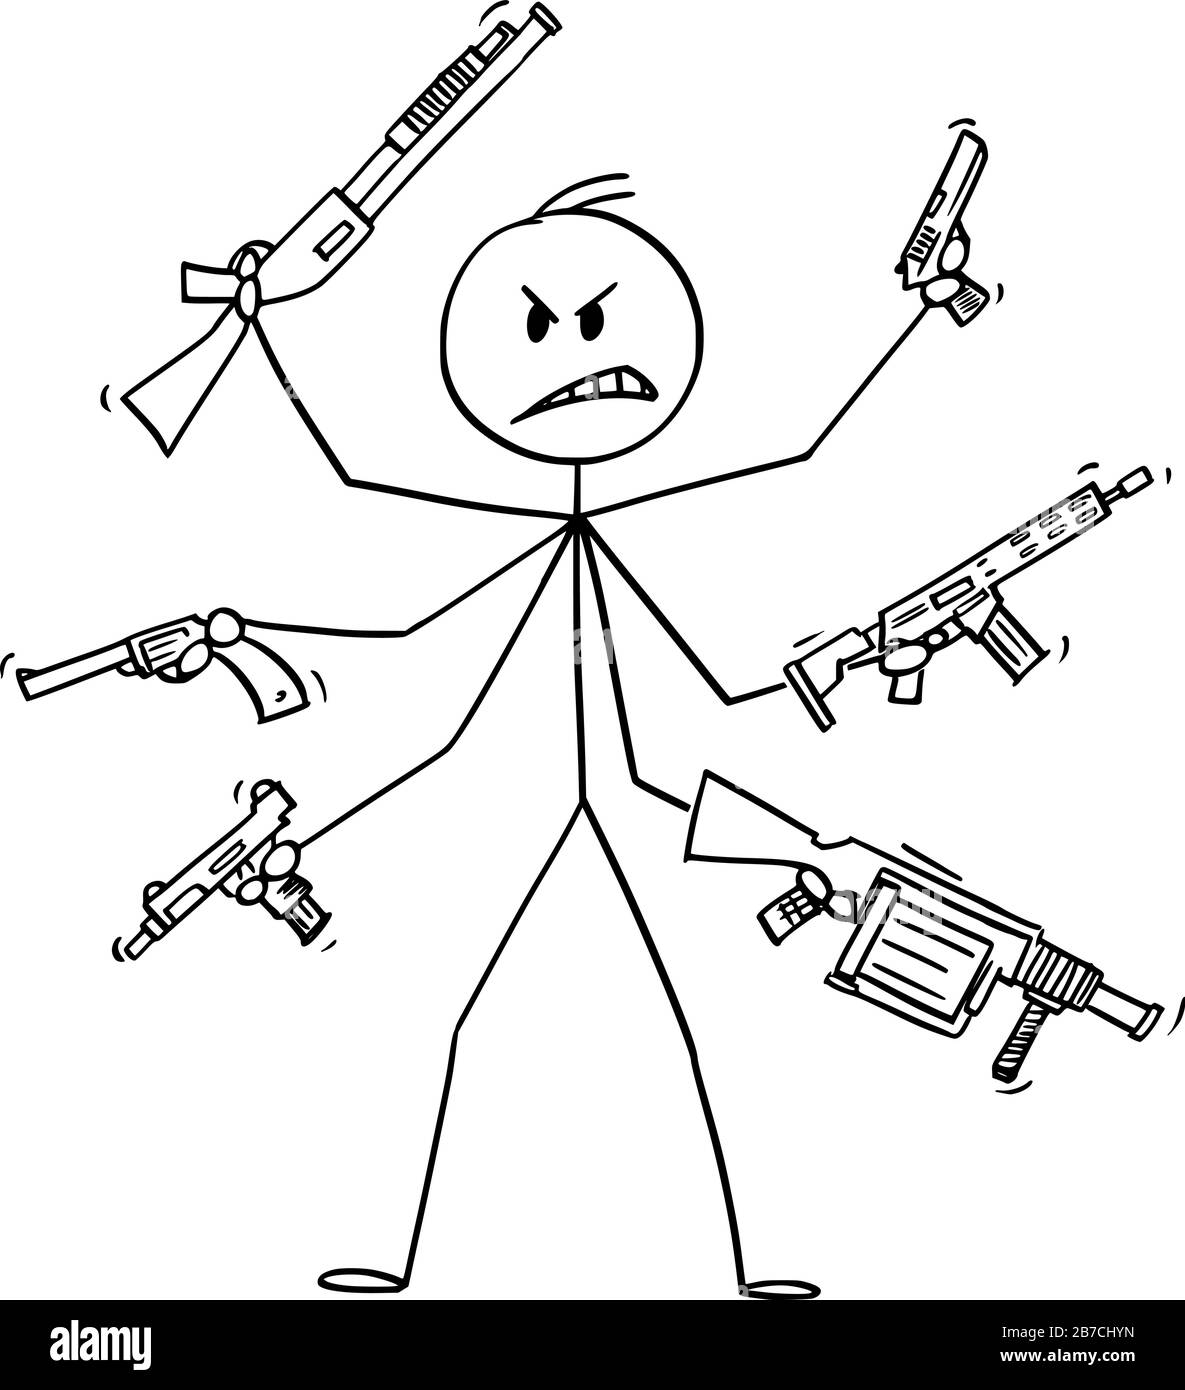 Vector Cartoon Stick Figure Zeichnung konzeptionelle Illustration des Menschen mit sechs Armen, die Waffen wie Pistole, Gewehr, Granatwerfer und Sub-Machine Gun.Concept of Fight and Violence halten. Stock Vektor